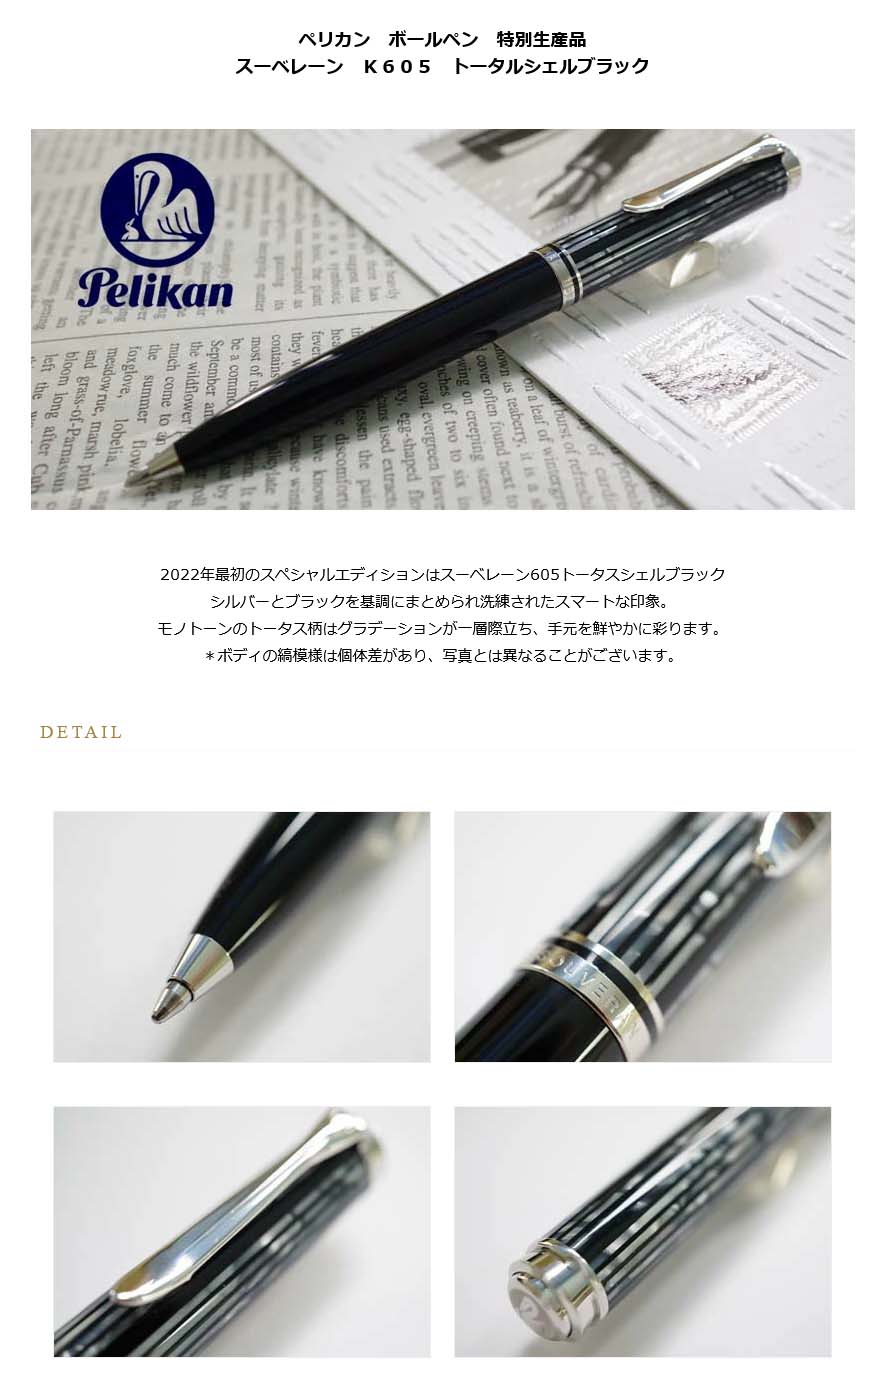 ペリカンボールペン 特別生産品 スーベレーン K605『ホワイトストライプ』日本国内限定販売500本